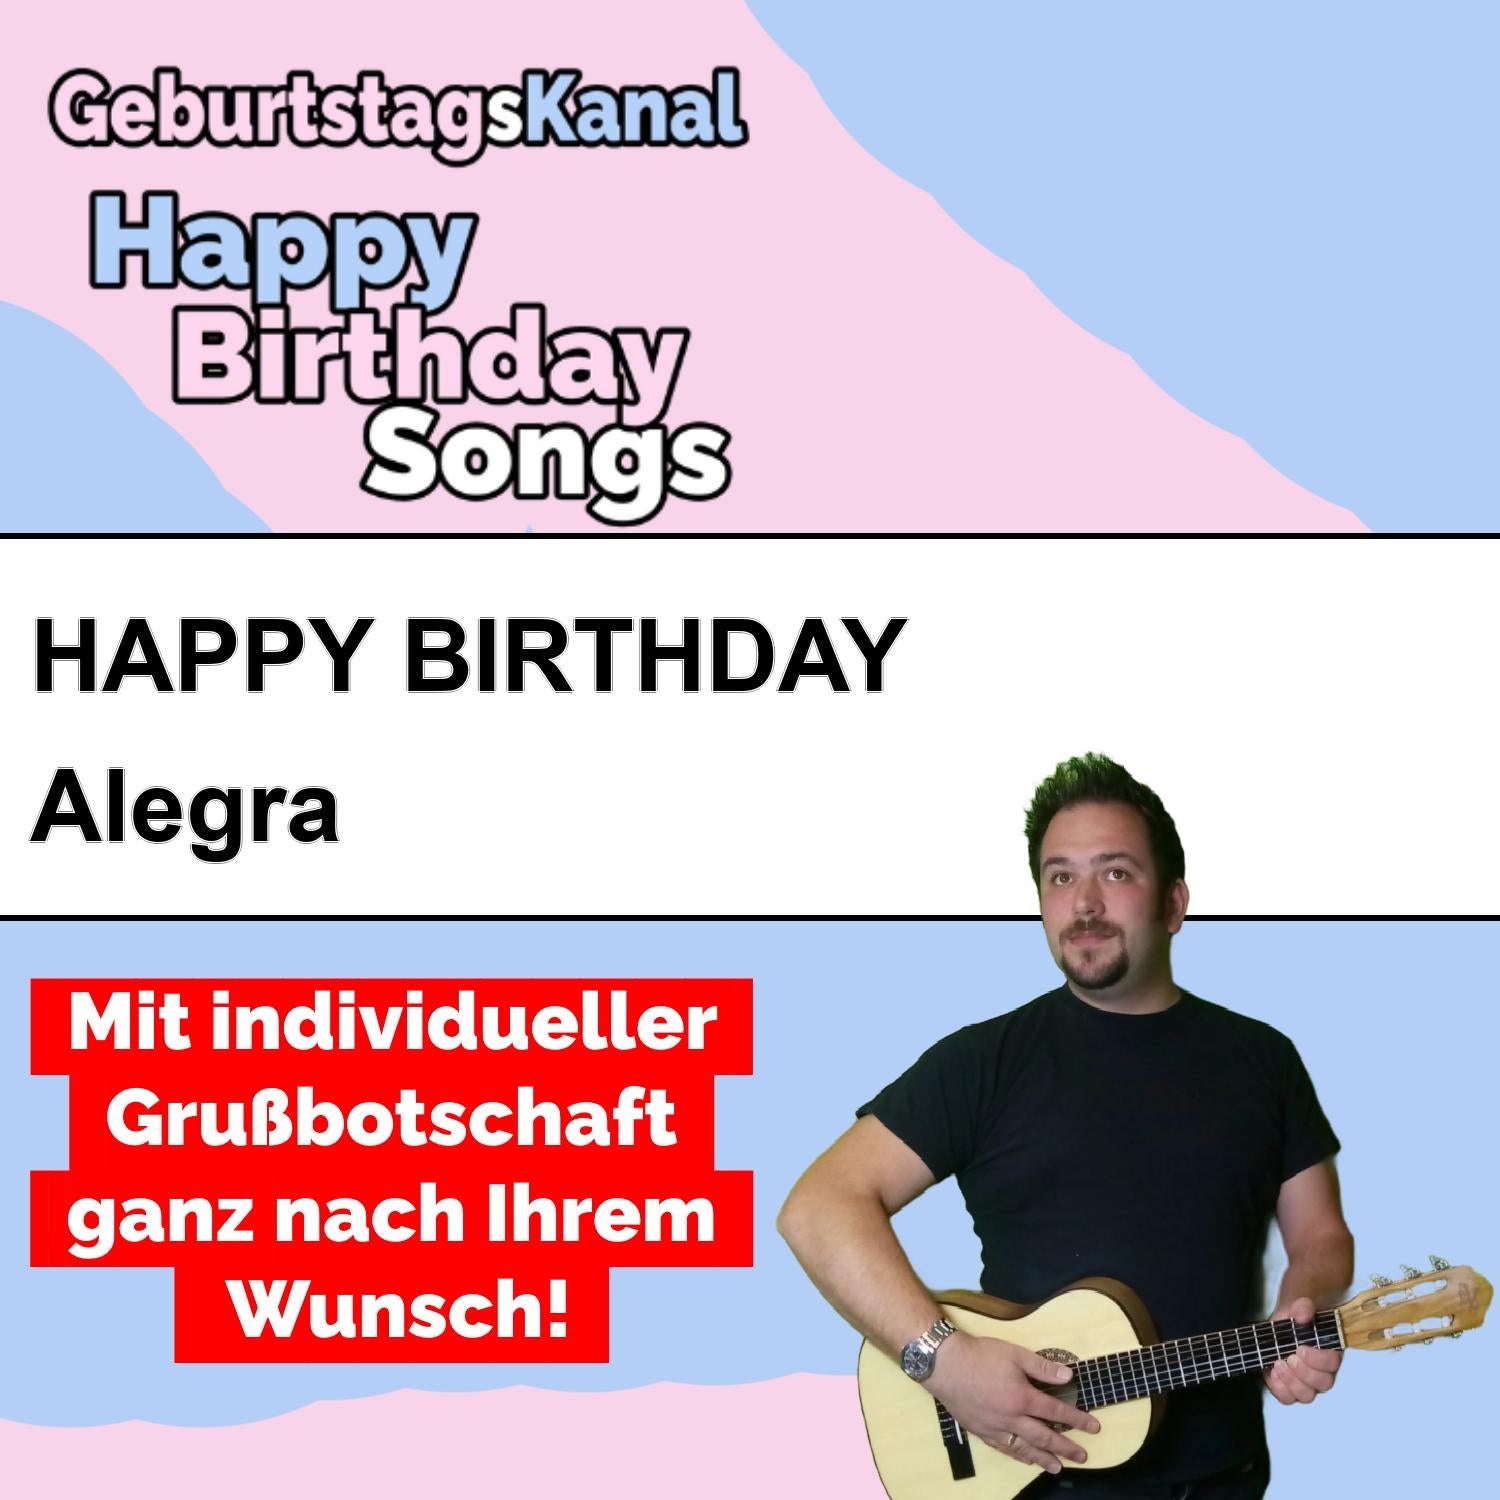 Produktbild Happy Birthday to you Alegra mit Wunschgrußbotschaft